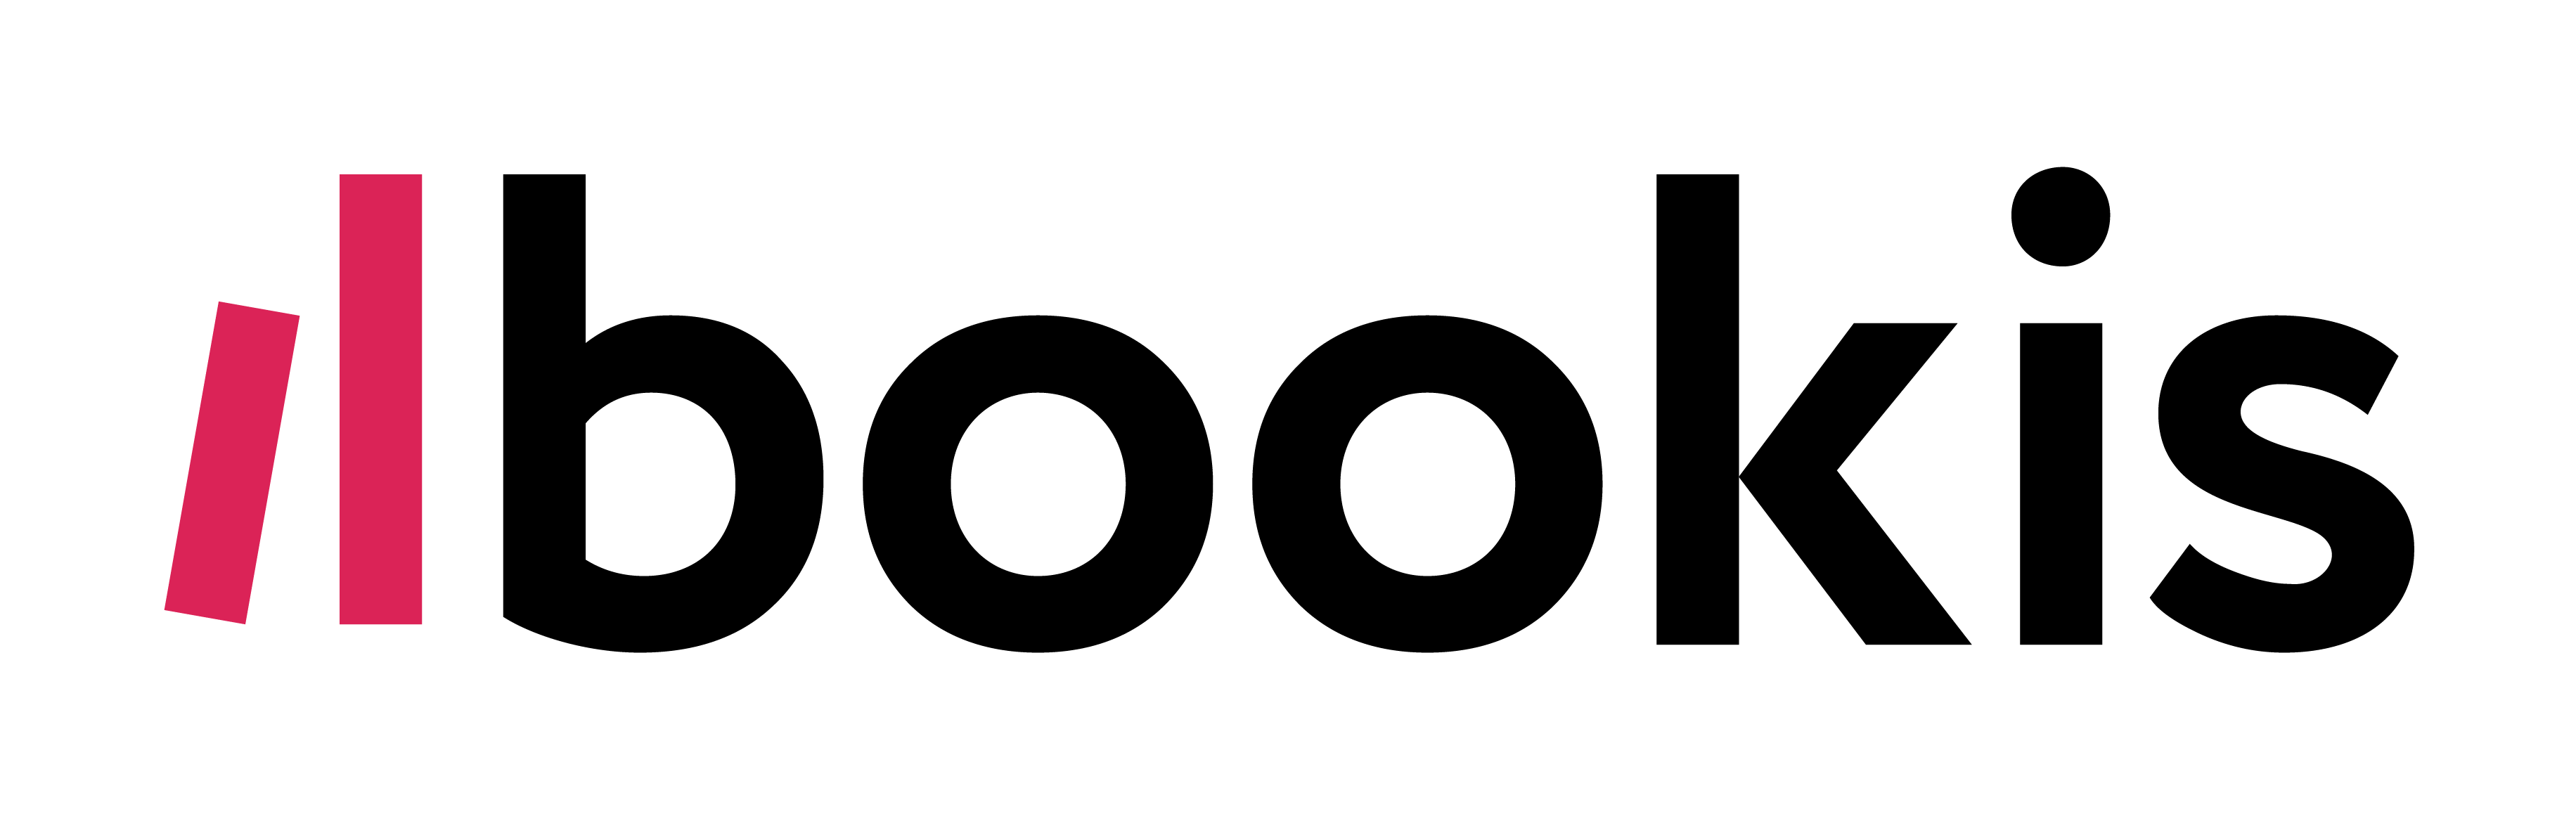 Bookis logo 8x